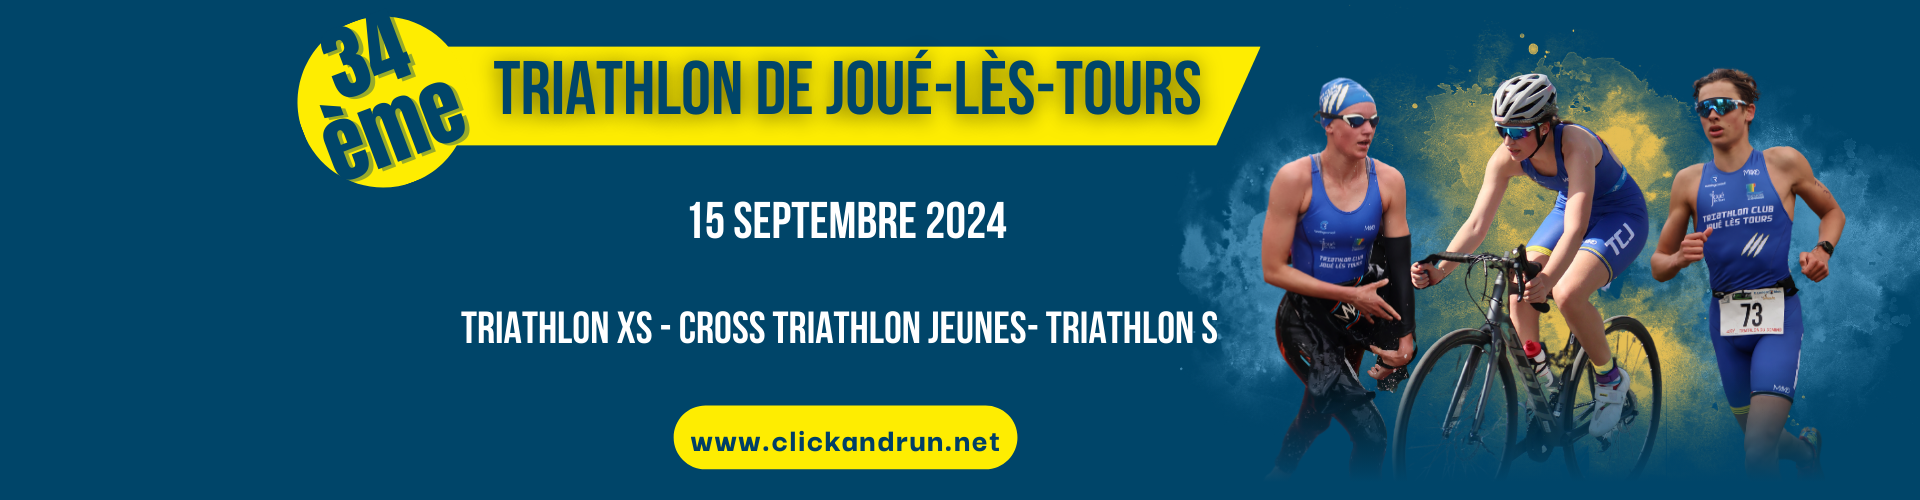 Triathlon de Joué-lès-Tours 2024